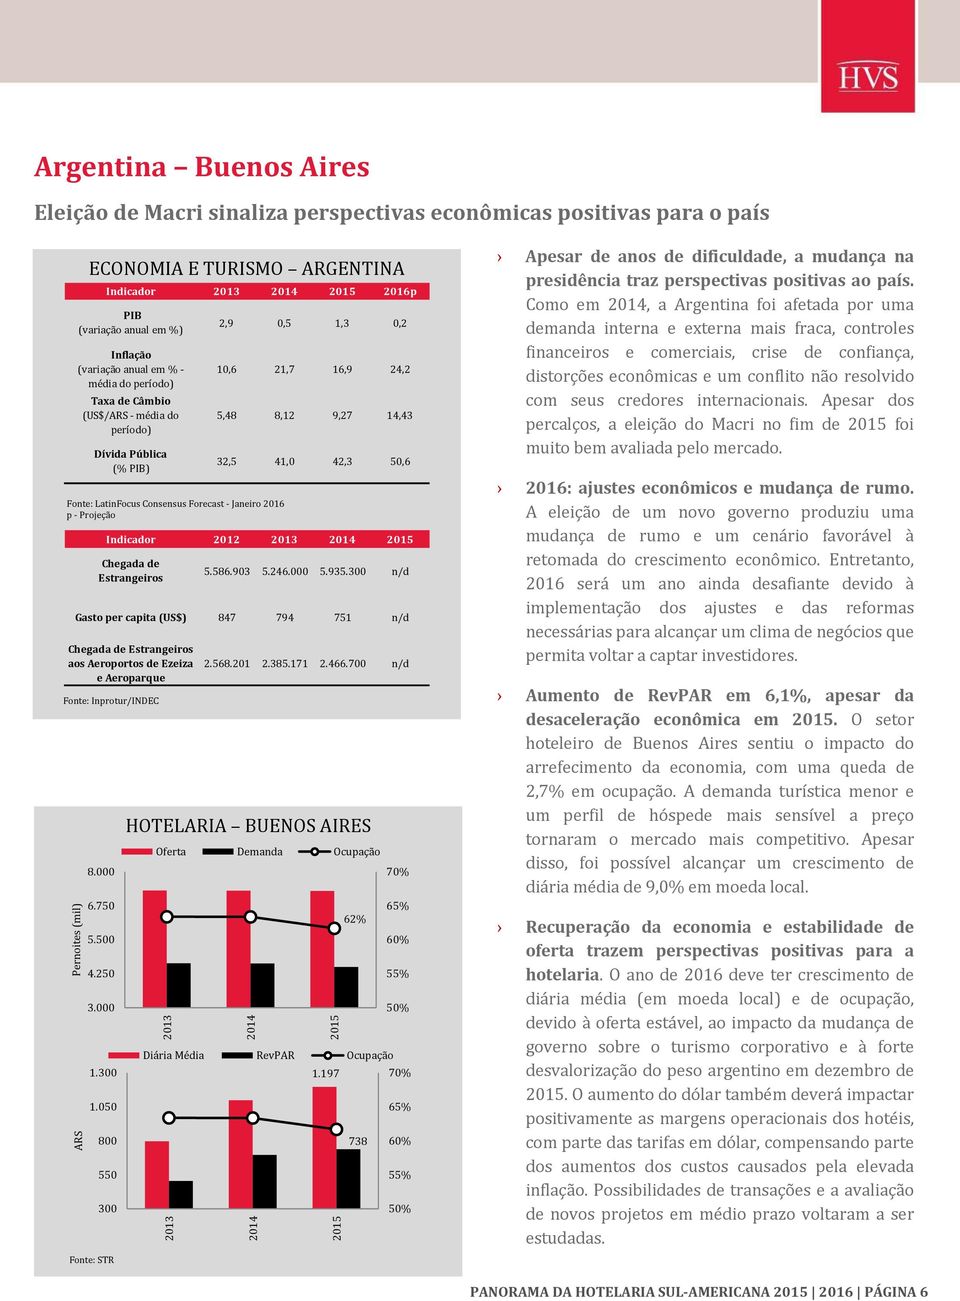 Consensus Forecast Janeiro 2016 p Projeção Fonte: Inprotur/INDEC HOTELARIA BUENOS AIRES 1.